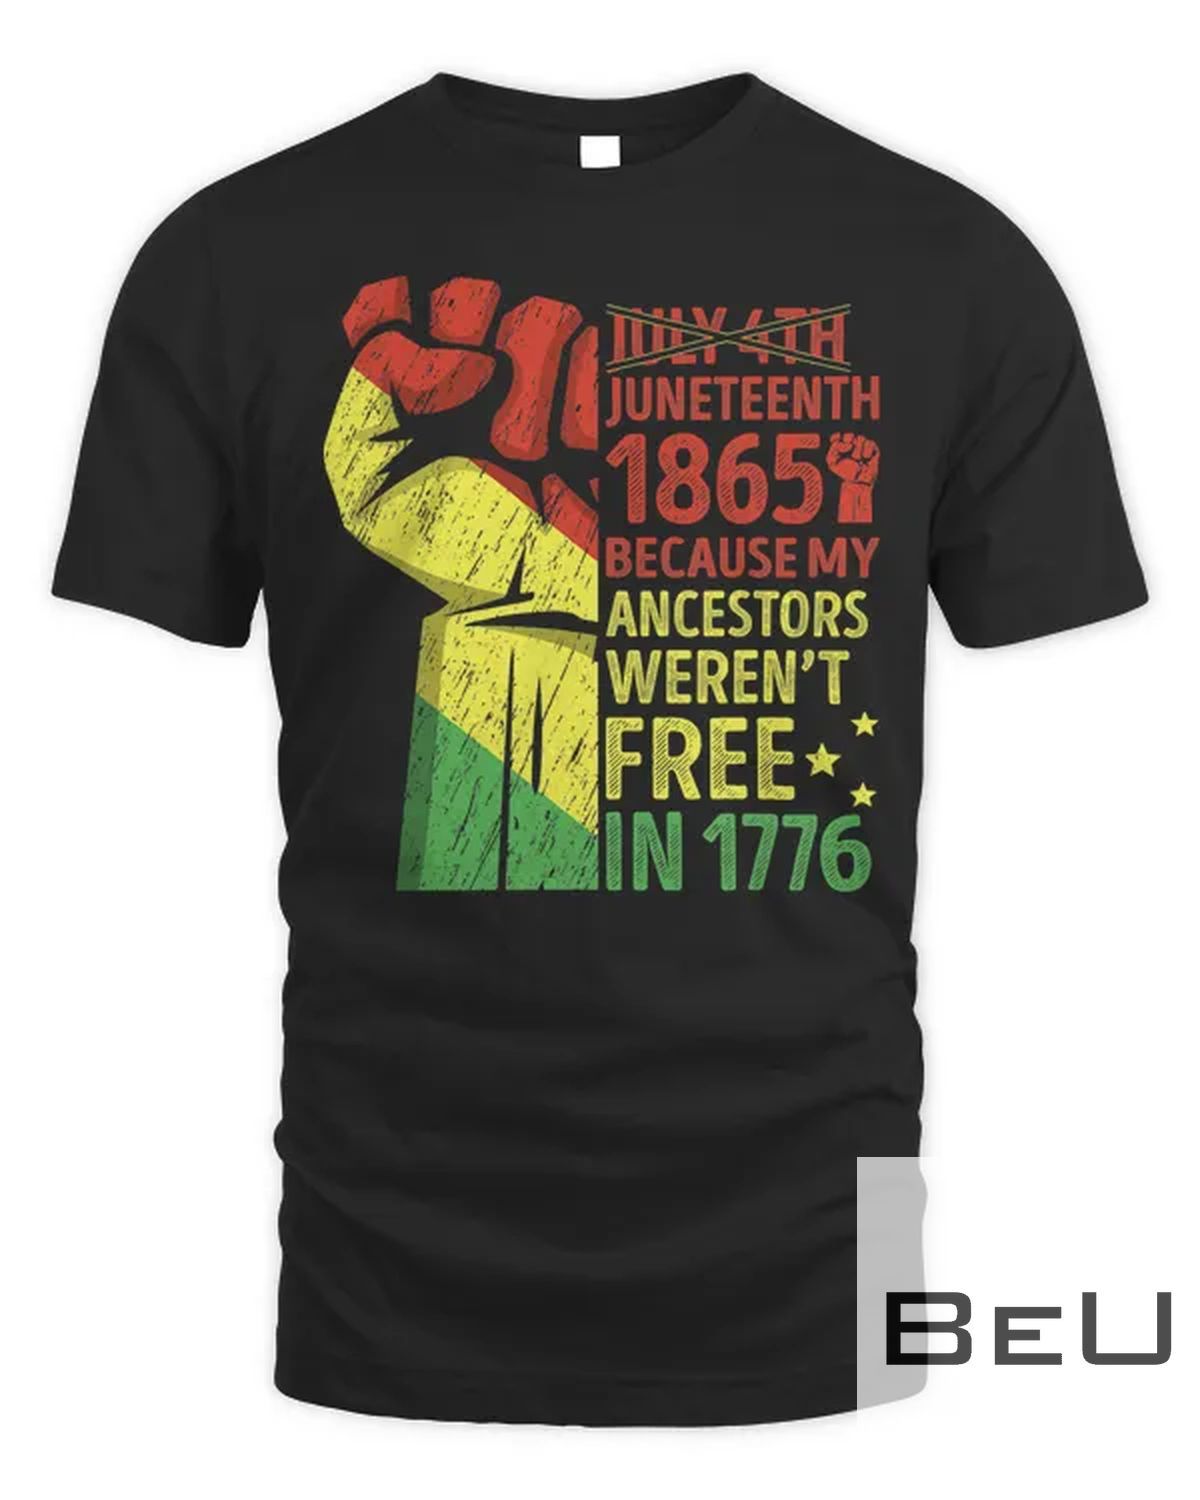 Retro July Fourth Juneteenth 1865 African Men Women Fist T-shirt